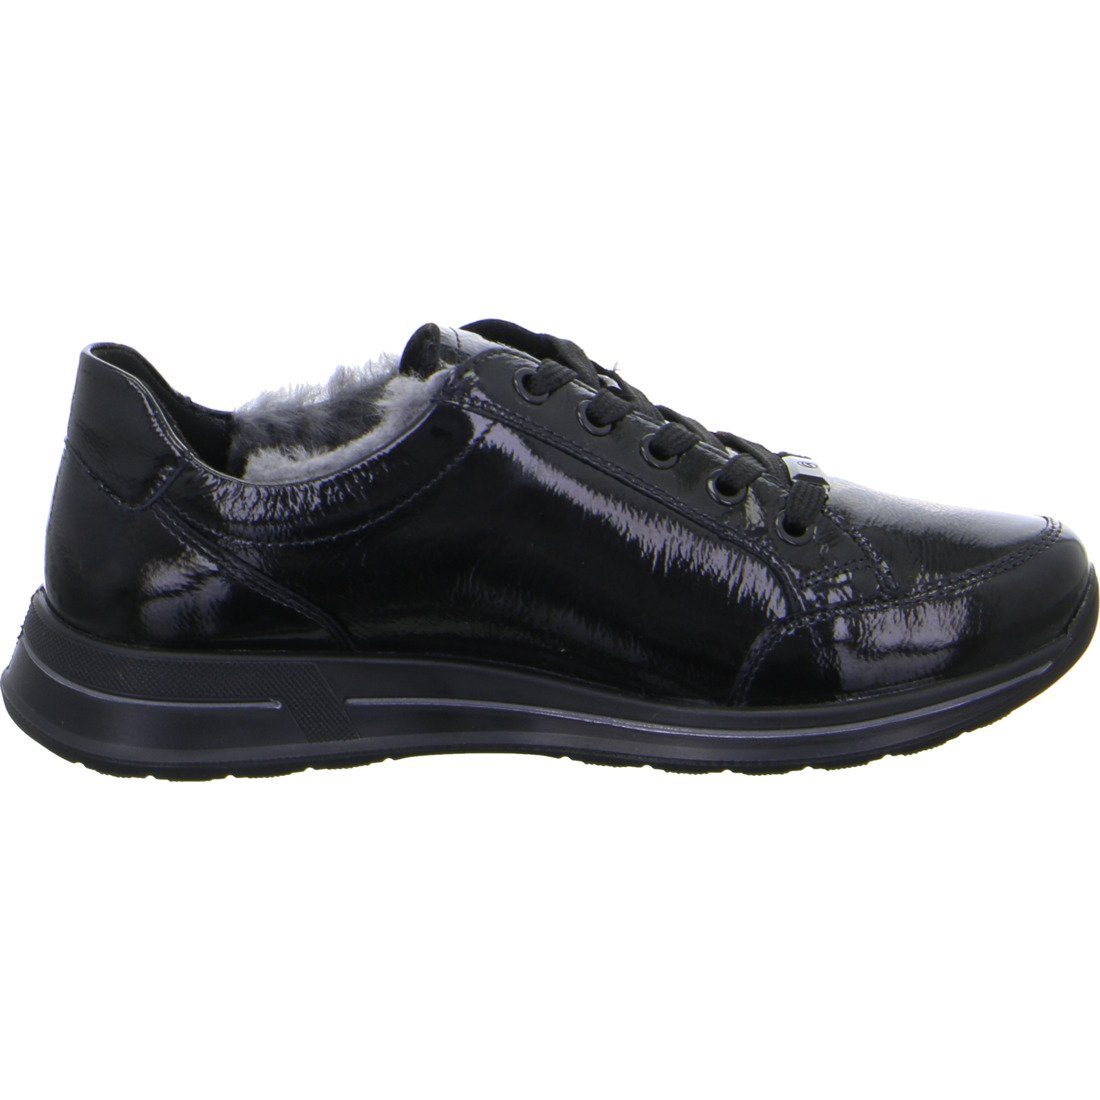 Schuhe, Osaka Ara Ara - Sneaker schwarz Glattleder Damen 049669 Sneaker